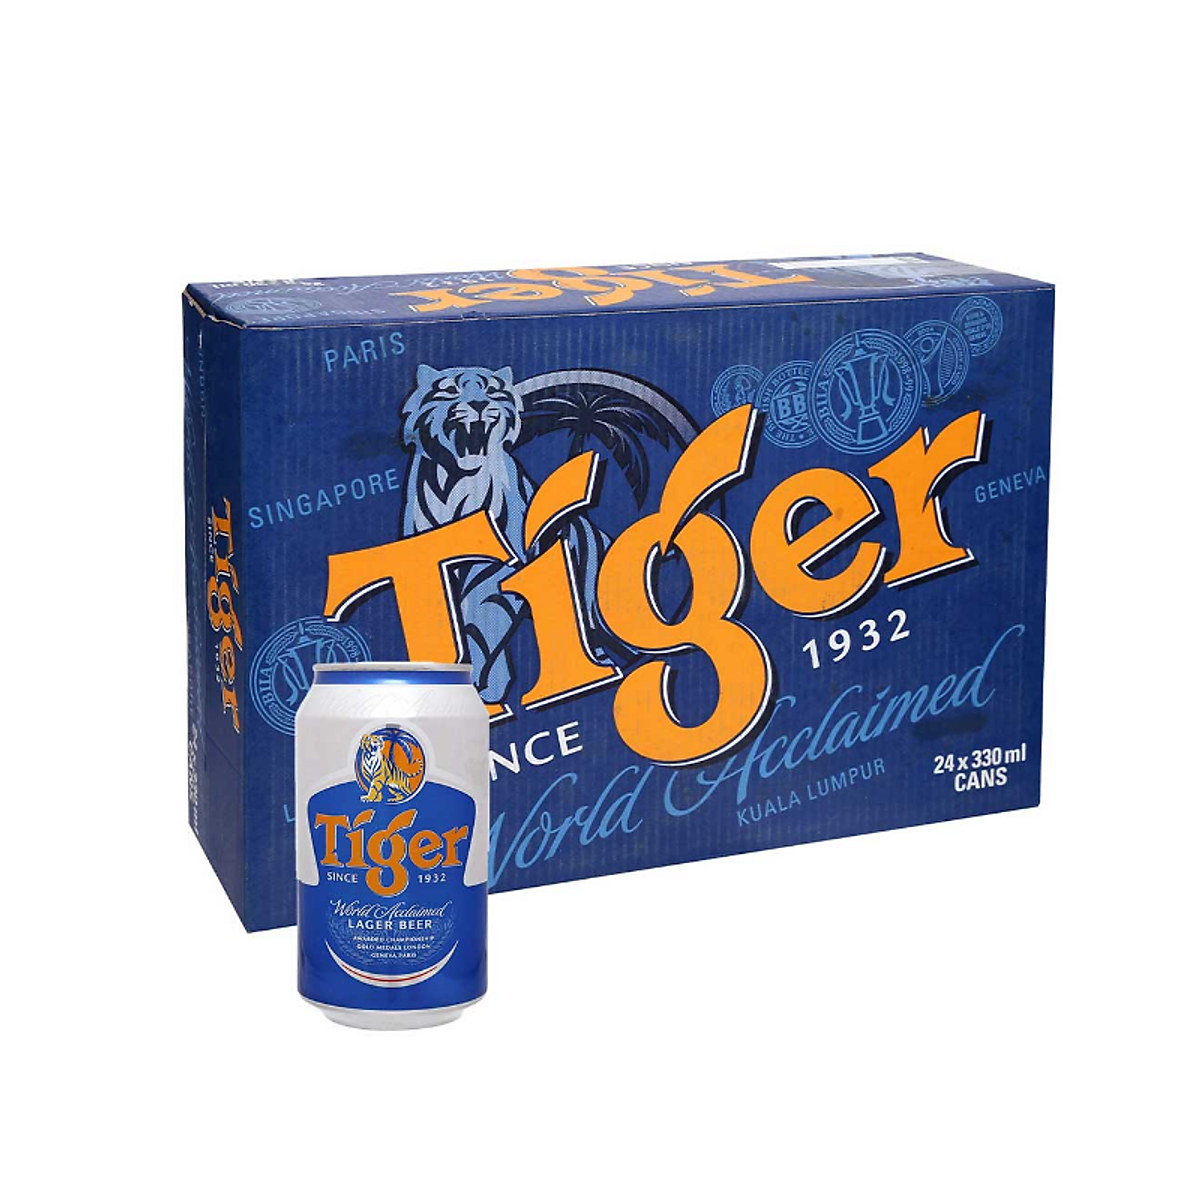 Bia Tiger bao nhiêu 1 thùng - Thùng 24 lon bia Tiger Crystal giá 405.000 đồng